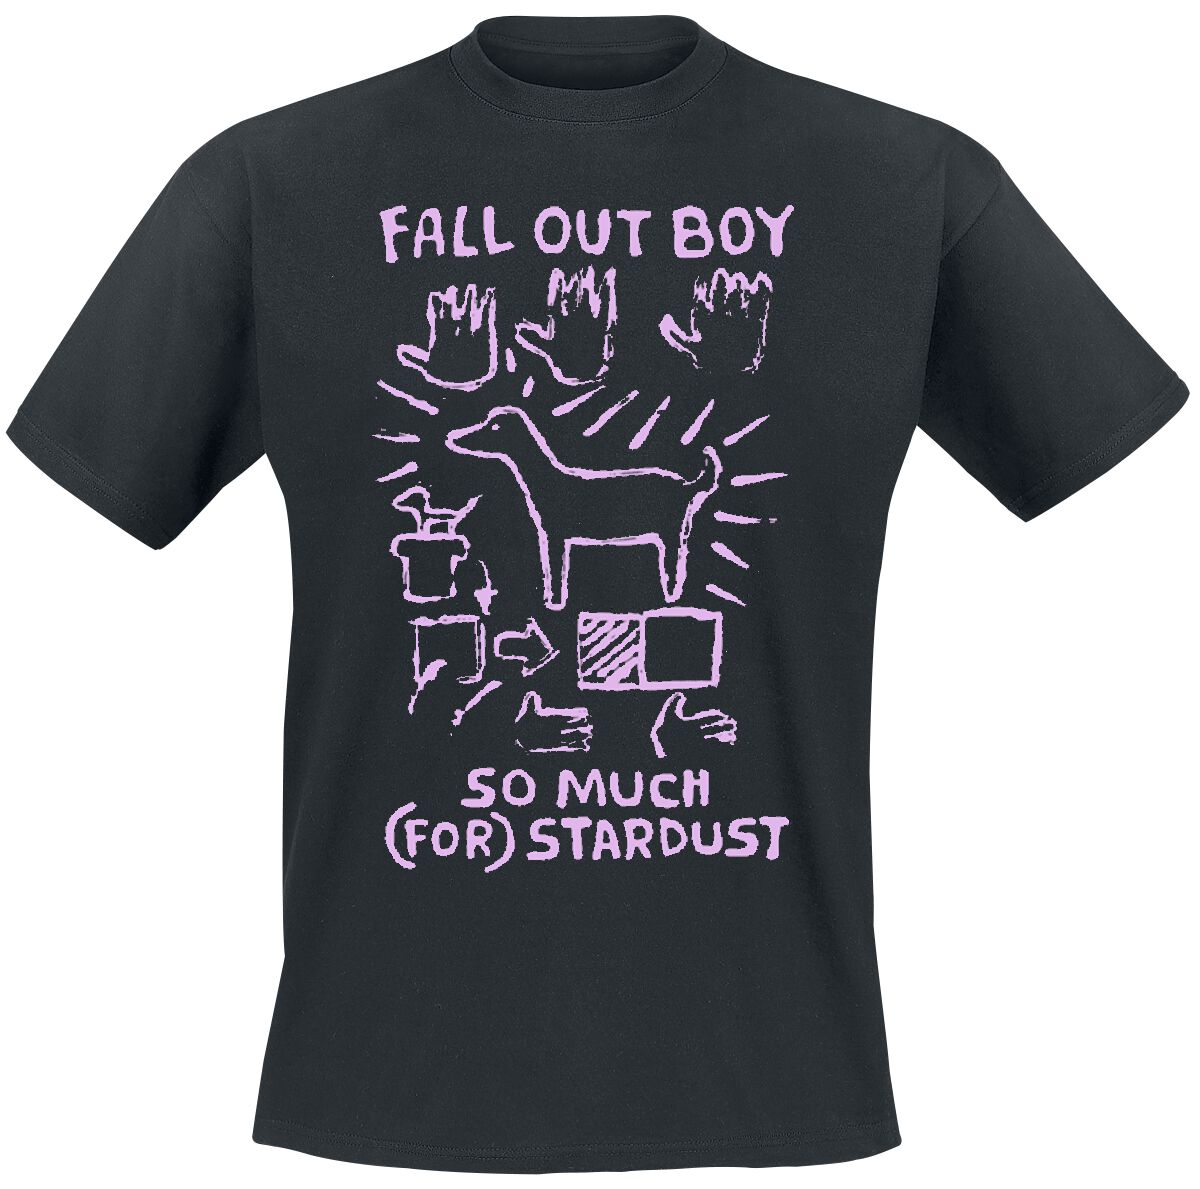 Fall Out Boy T-Shirt - Pink Dog So Much Stardust - S bis L - für Männer - Größe S - schwarz  - Lizenziertes Merchandise!